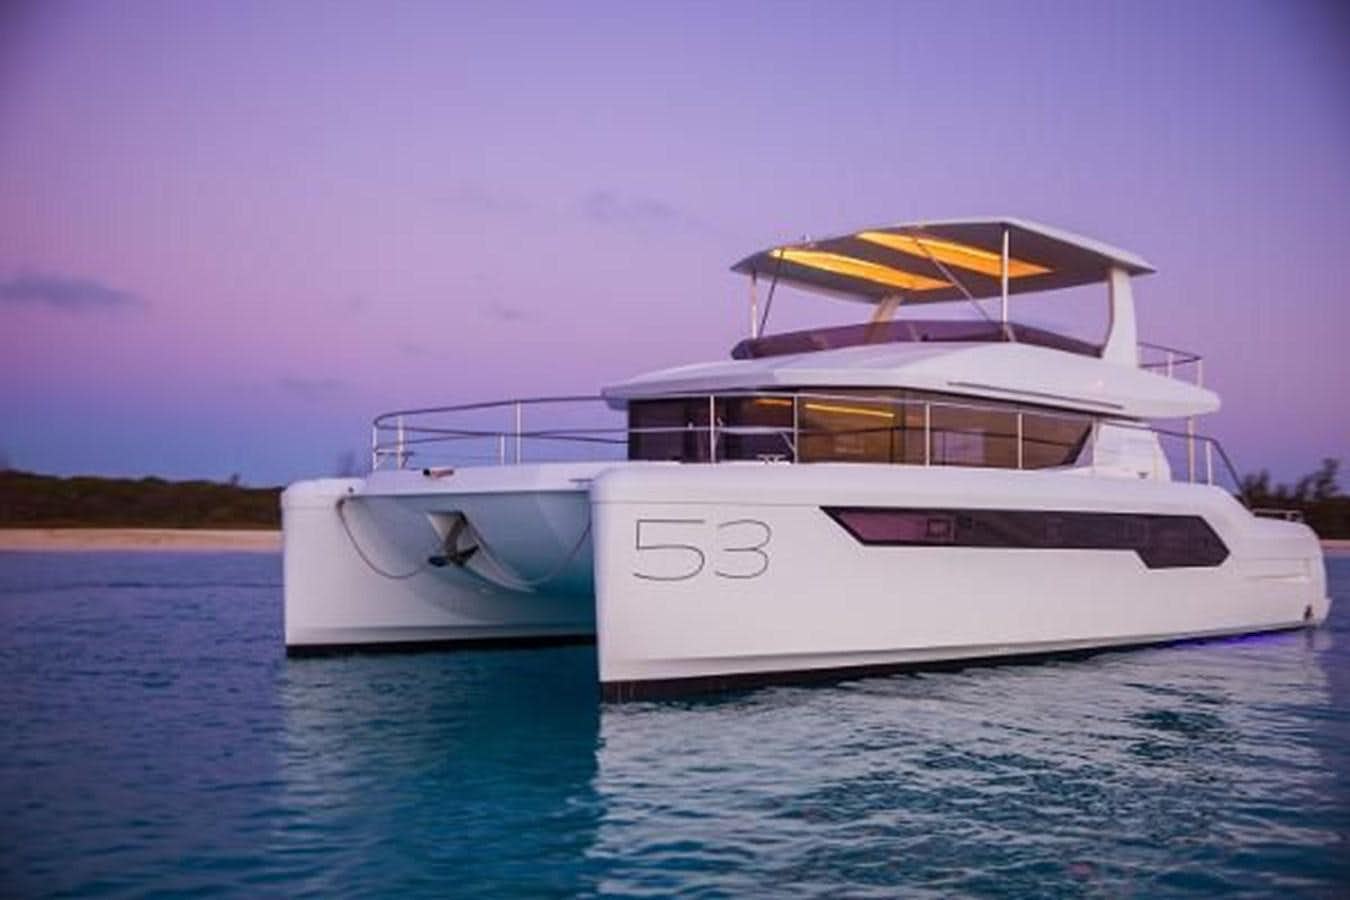 2023 leopard 53 powercat
Yacht for Sale